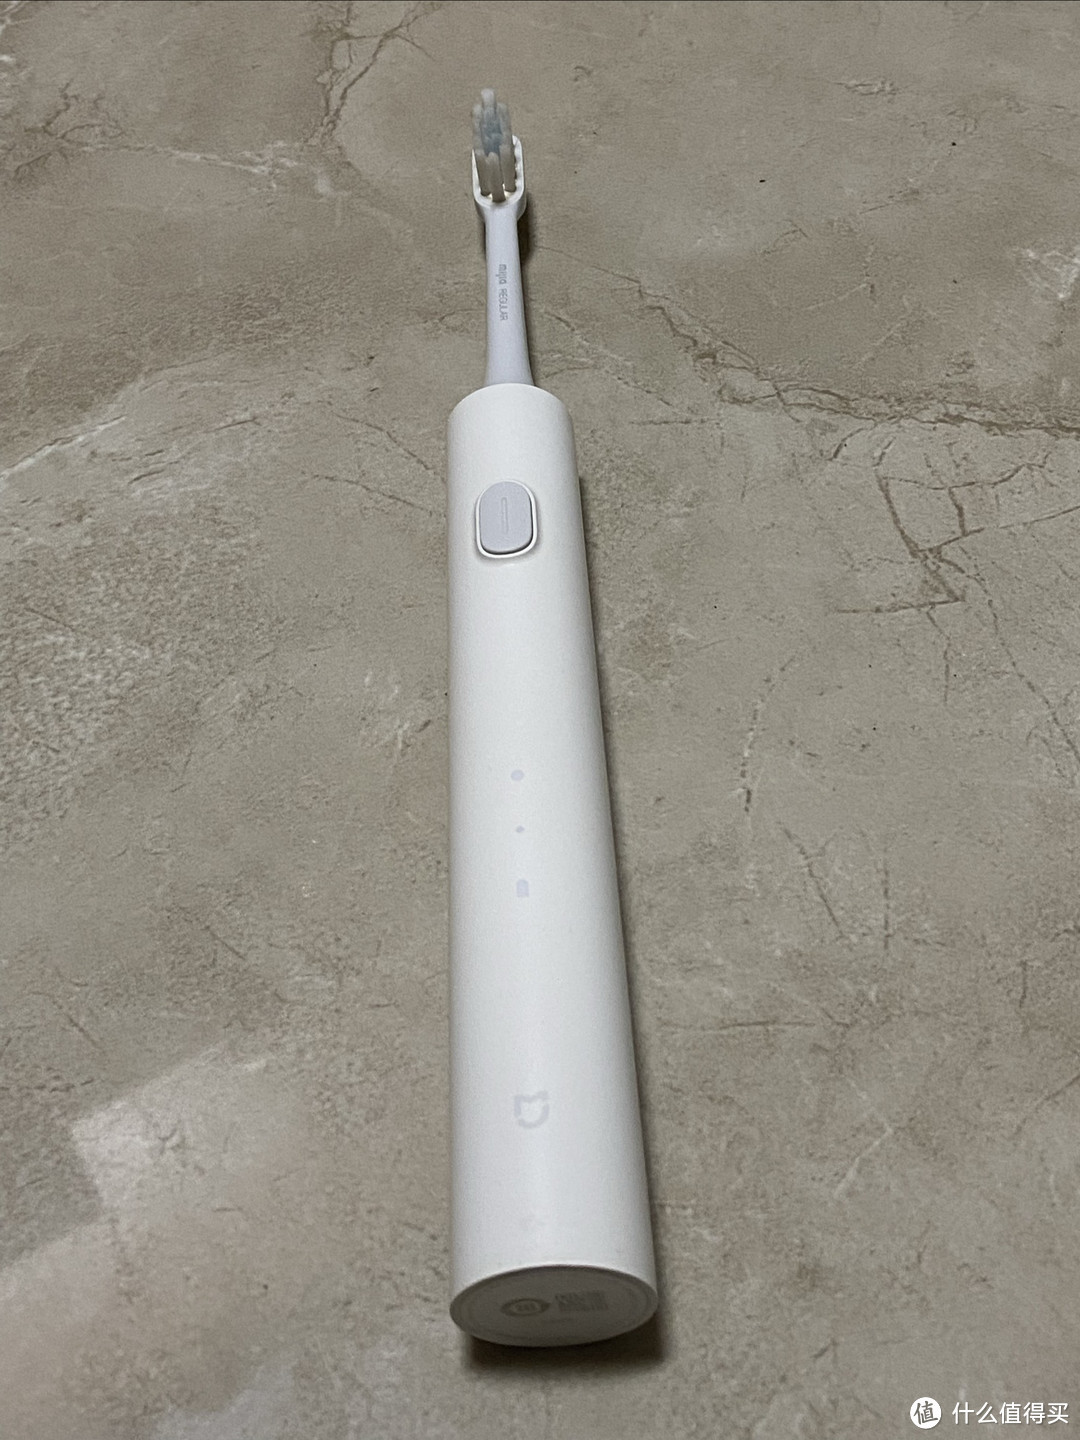 小米米家t302电动牙刷是一款性价比极高的电动牙刷。